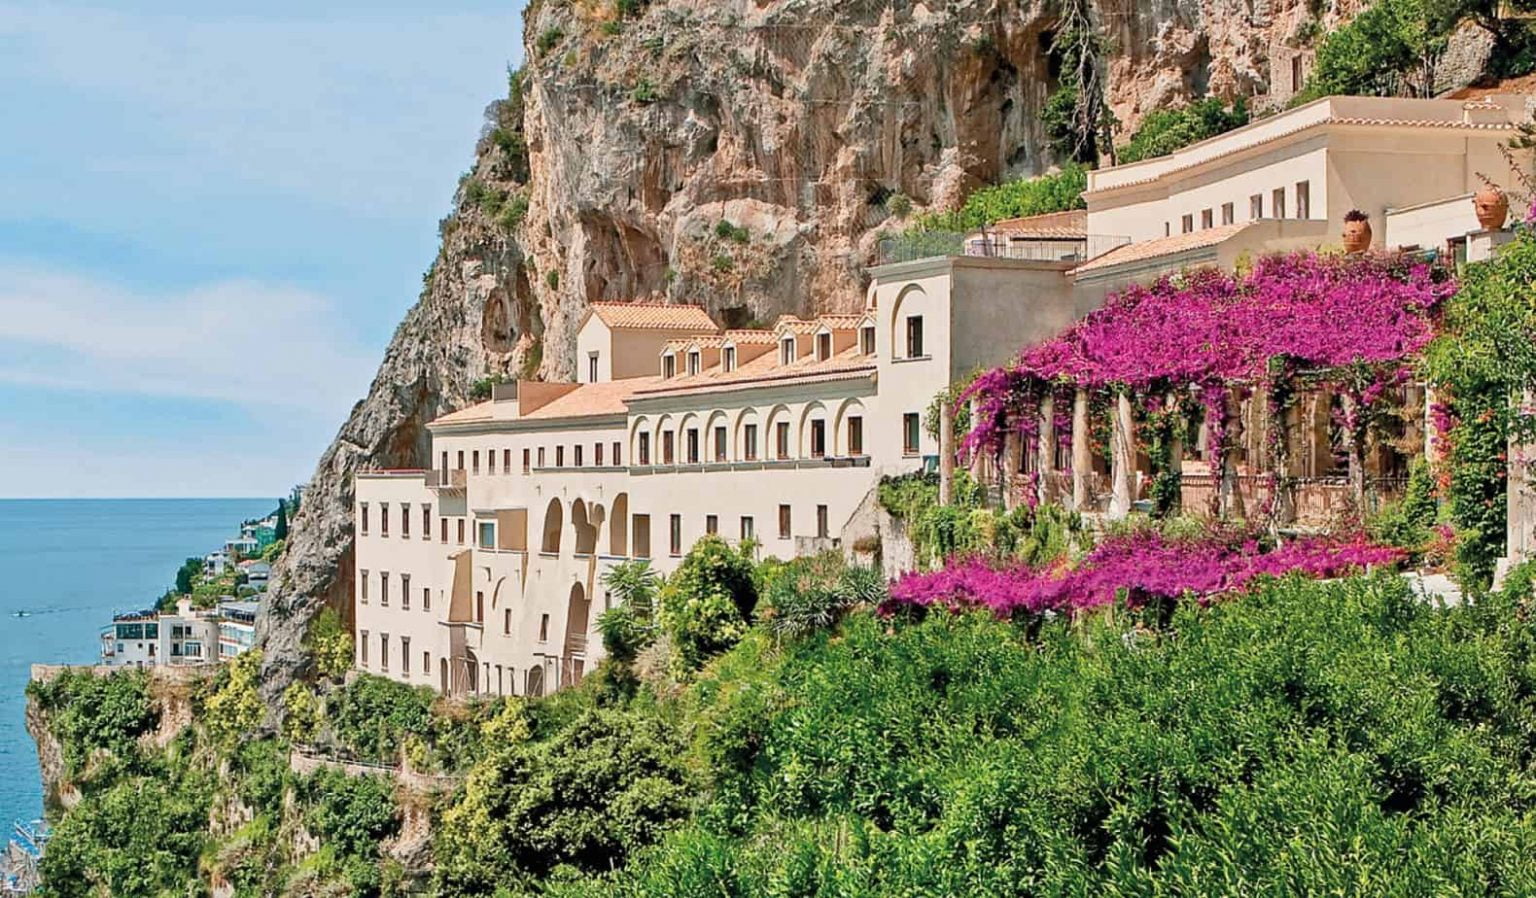 10 Best Hotels In Italy On Amalfi Coast - Alex Faraway